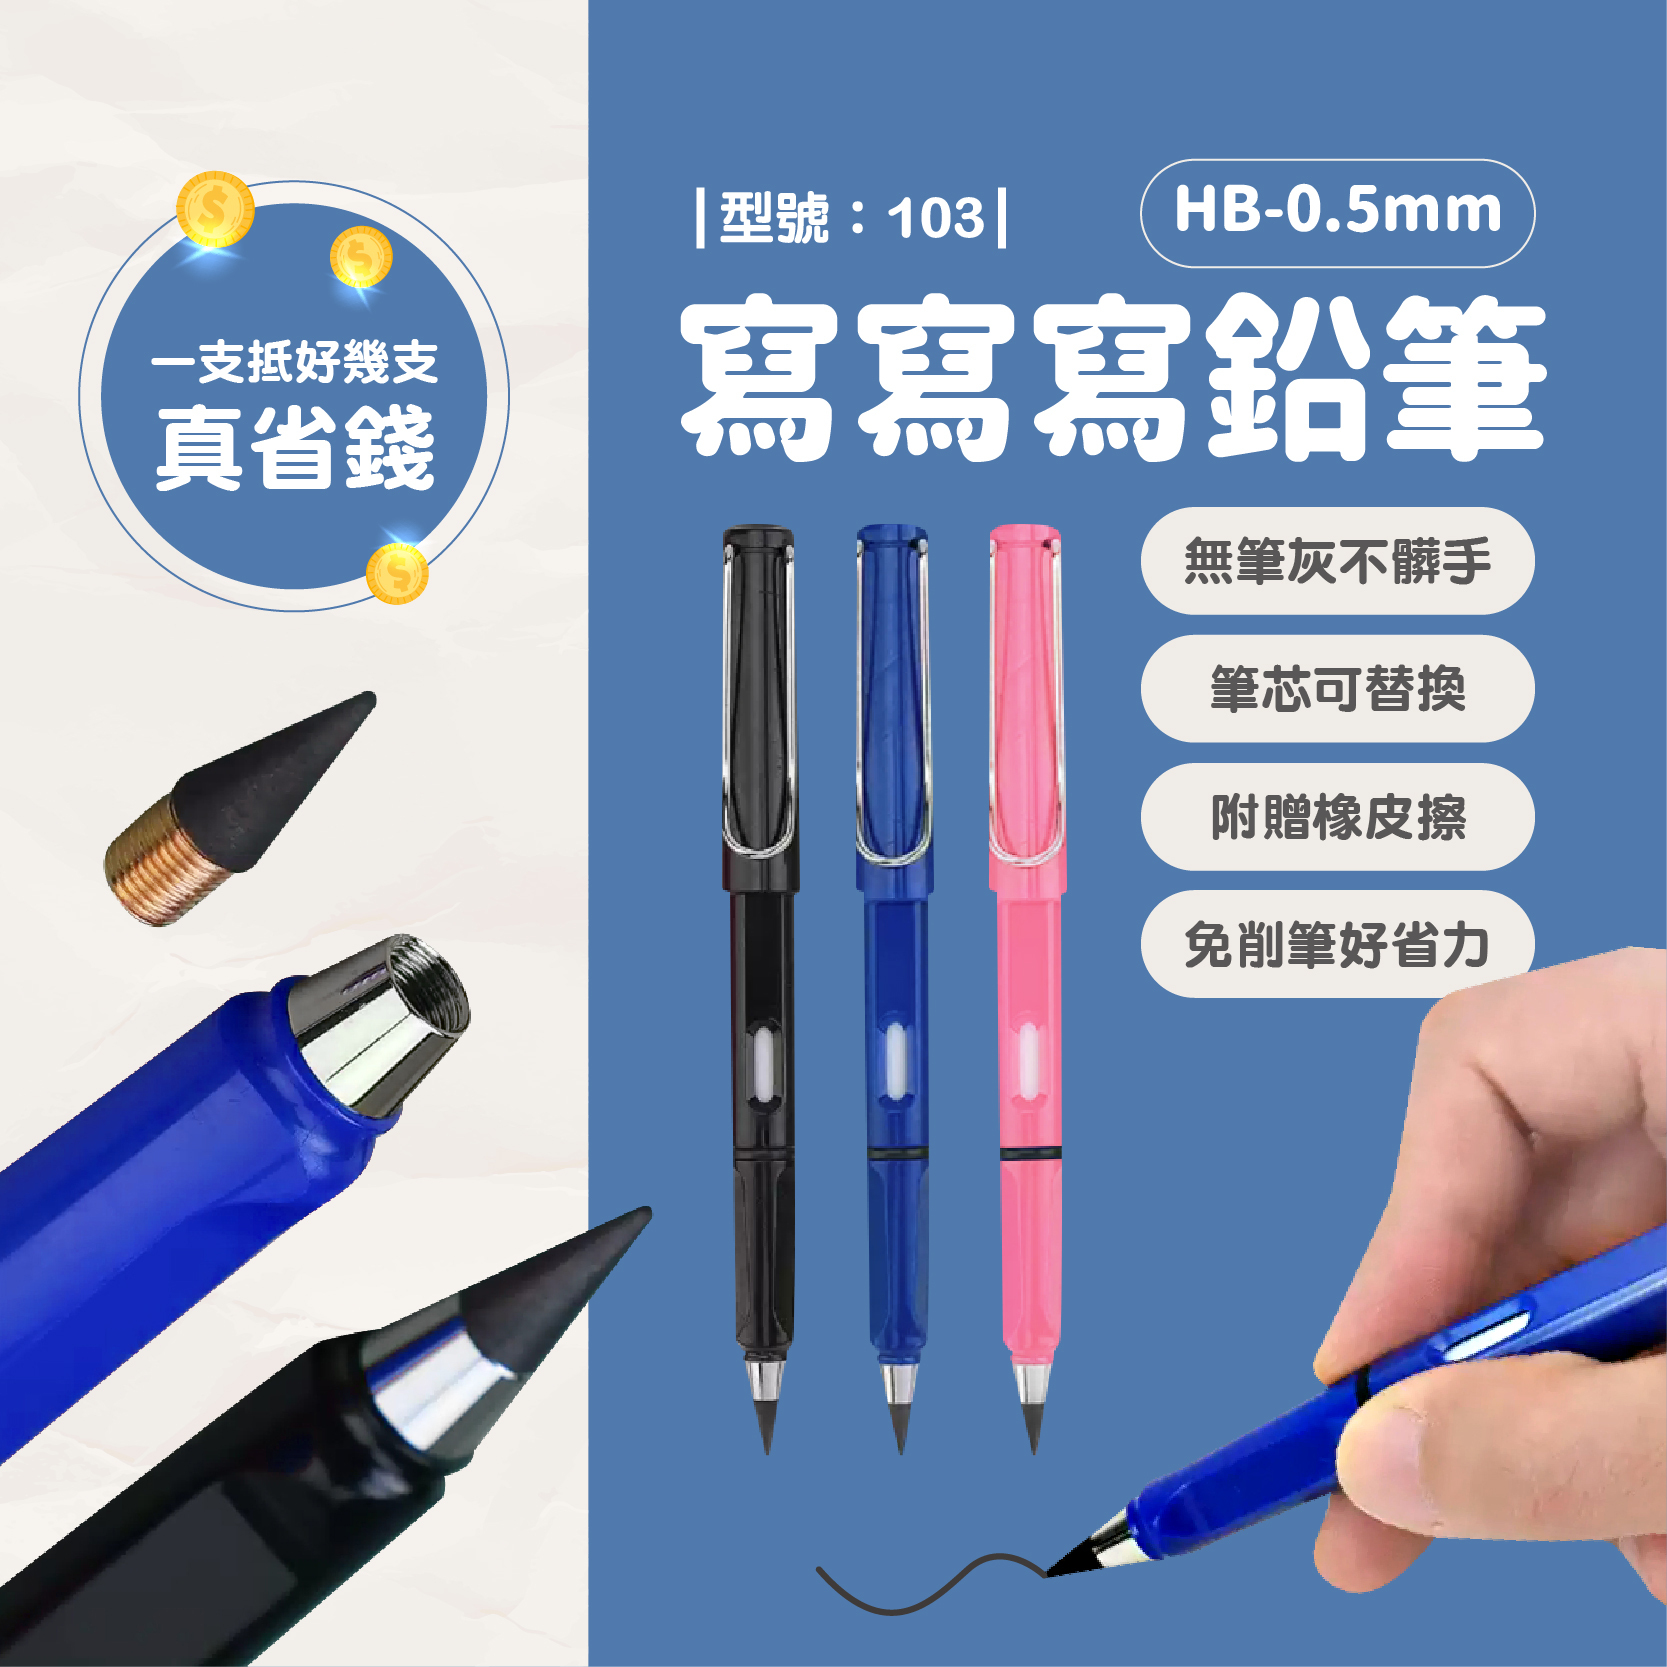 免削鉛筆黑科技鉛筆不用削鉛筆寫不完超耐寫HB鉛筆繪畫不易斷鉛筆鉛筆- FAV